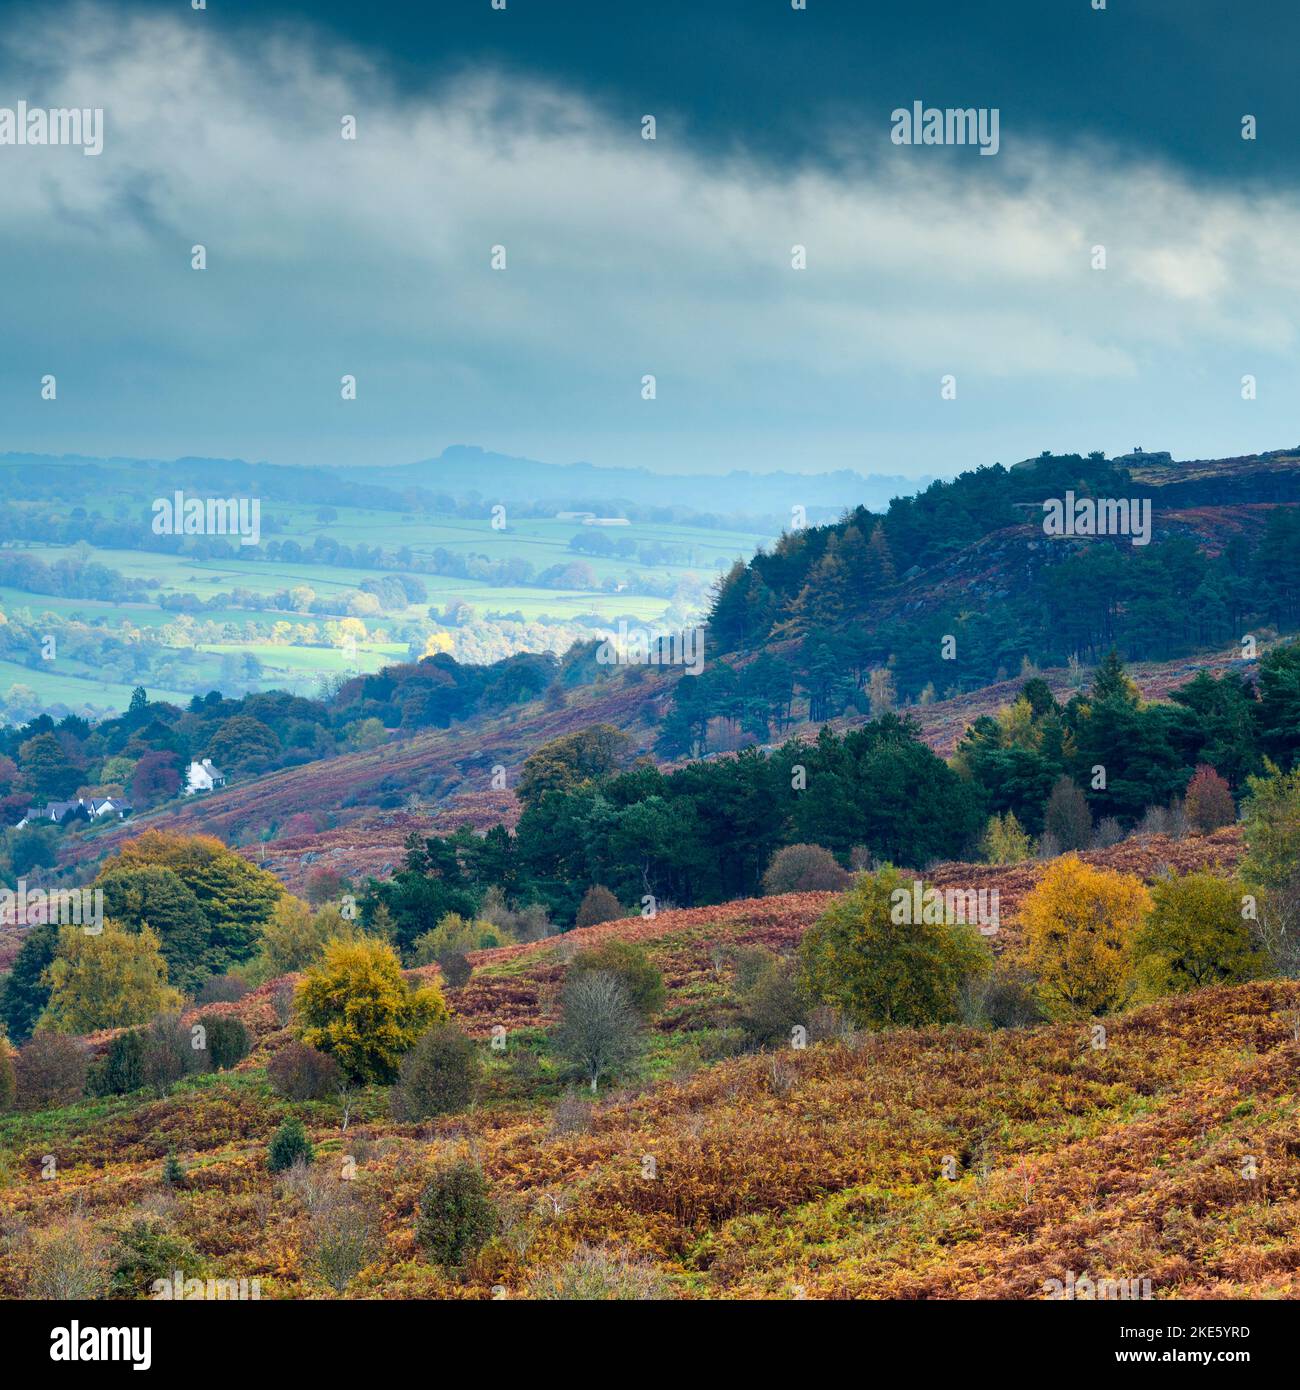 Vue sur la Wharfedale par Cow & Calf Rocks (crocheen et bruyère bruns, crag Almscliffe à travers la vallée, nuages noirs) - Ilkley, West Yorkshire, Angleterre, Royaume-Uni. Banque D'Images